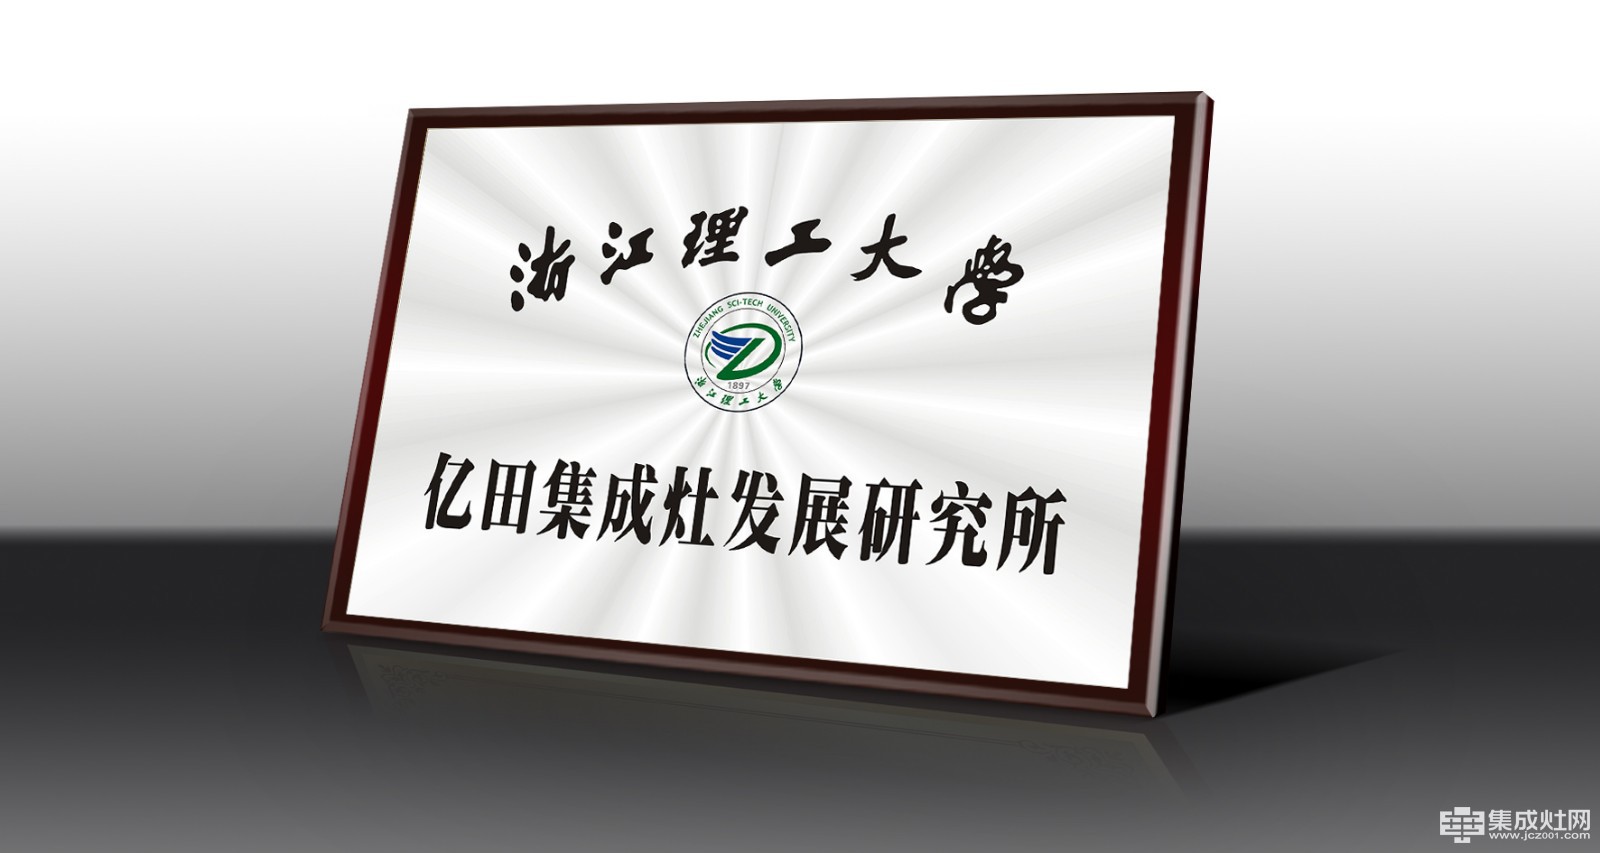 浙江理工大学集成灶产业发展研究所将发布首份集成灶行业白皮书